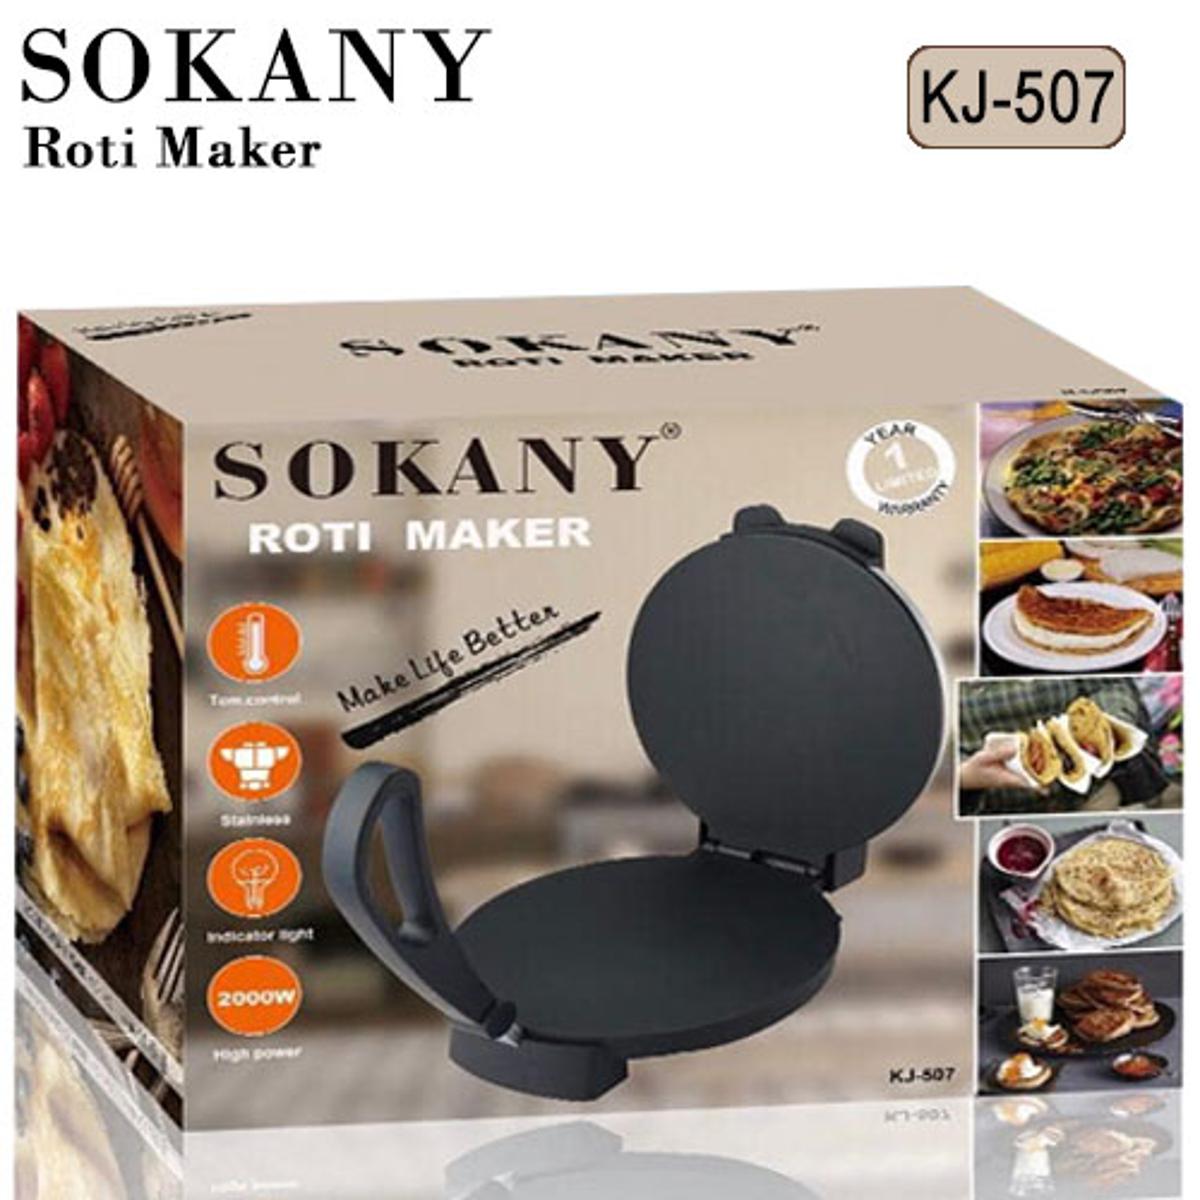 Original German SOKANY Roti Maker 1500W KJ507